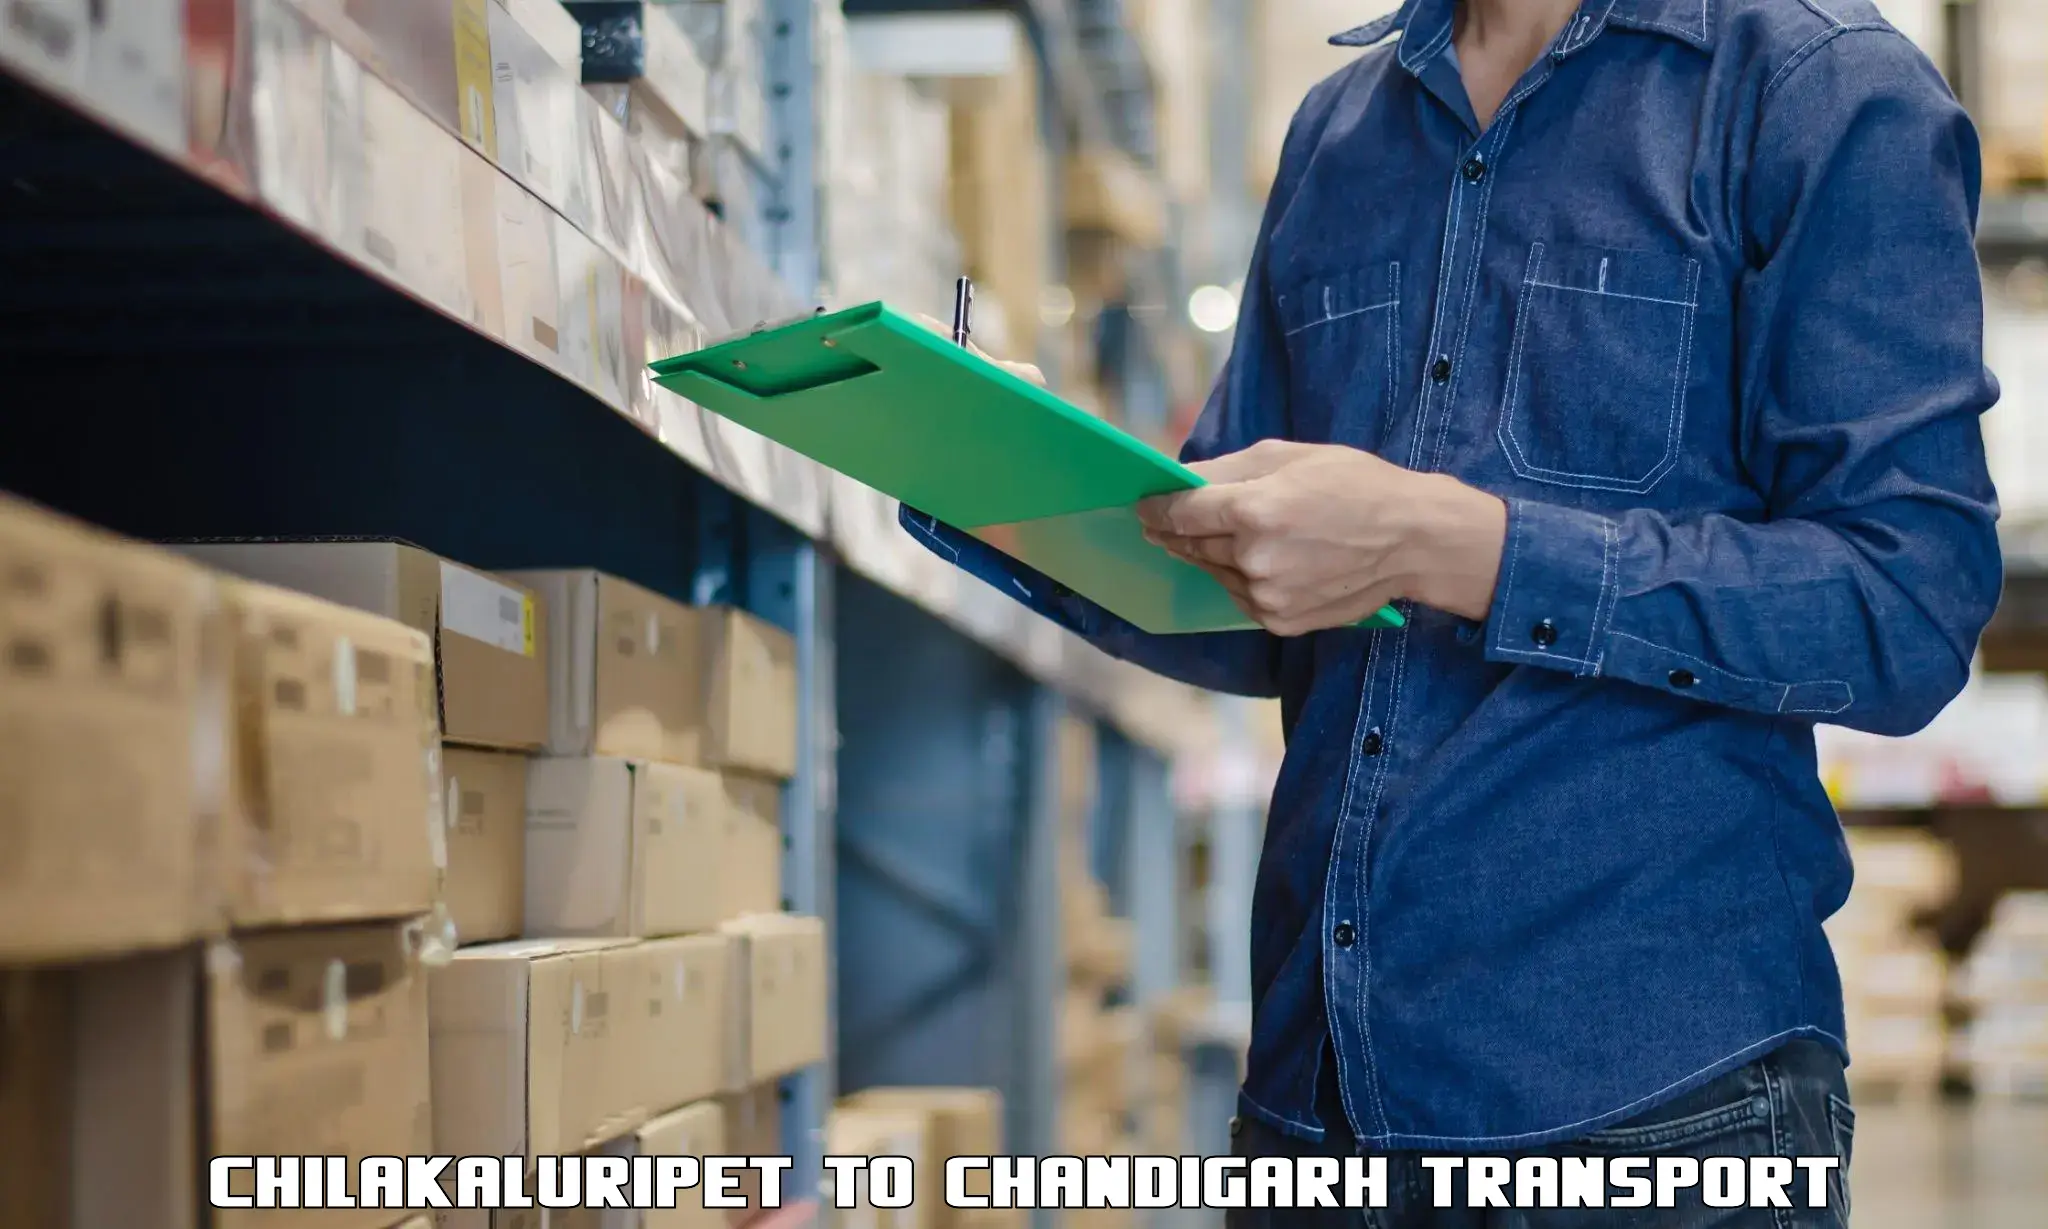 Truck transport companies in India Chilakaluripet to Chandigarh